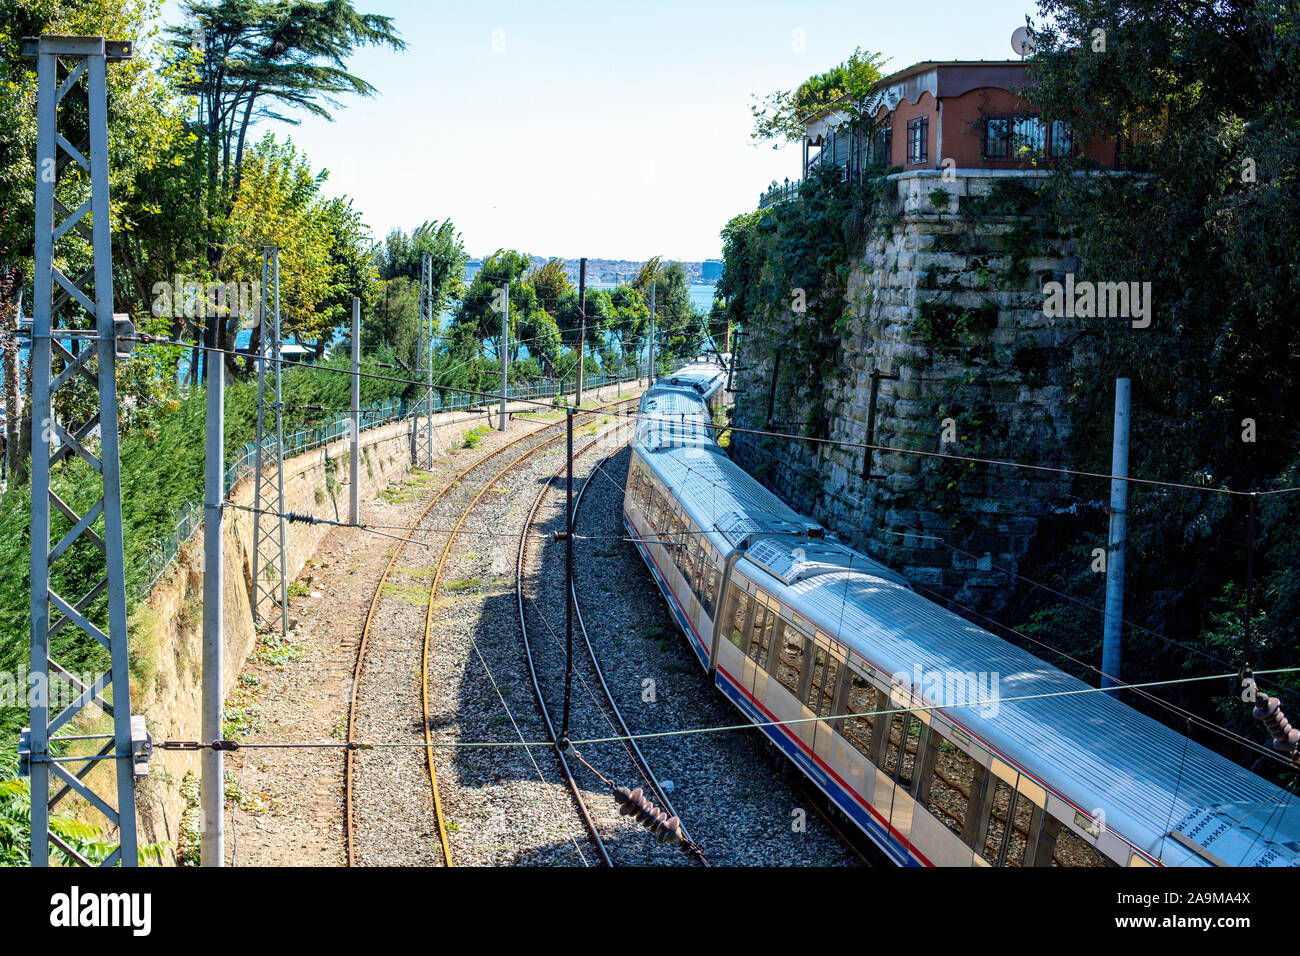 La stazione ferroviaria si volge verso il mare. Treno sulla linea ferroviaria con vista mare. Un treno tra il verde degli alberi e il muro di pietre. Foto Stock